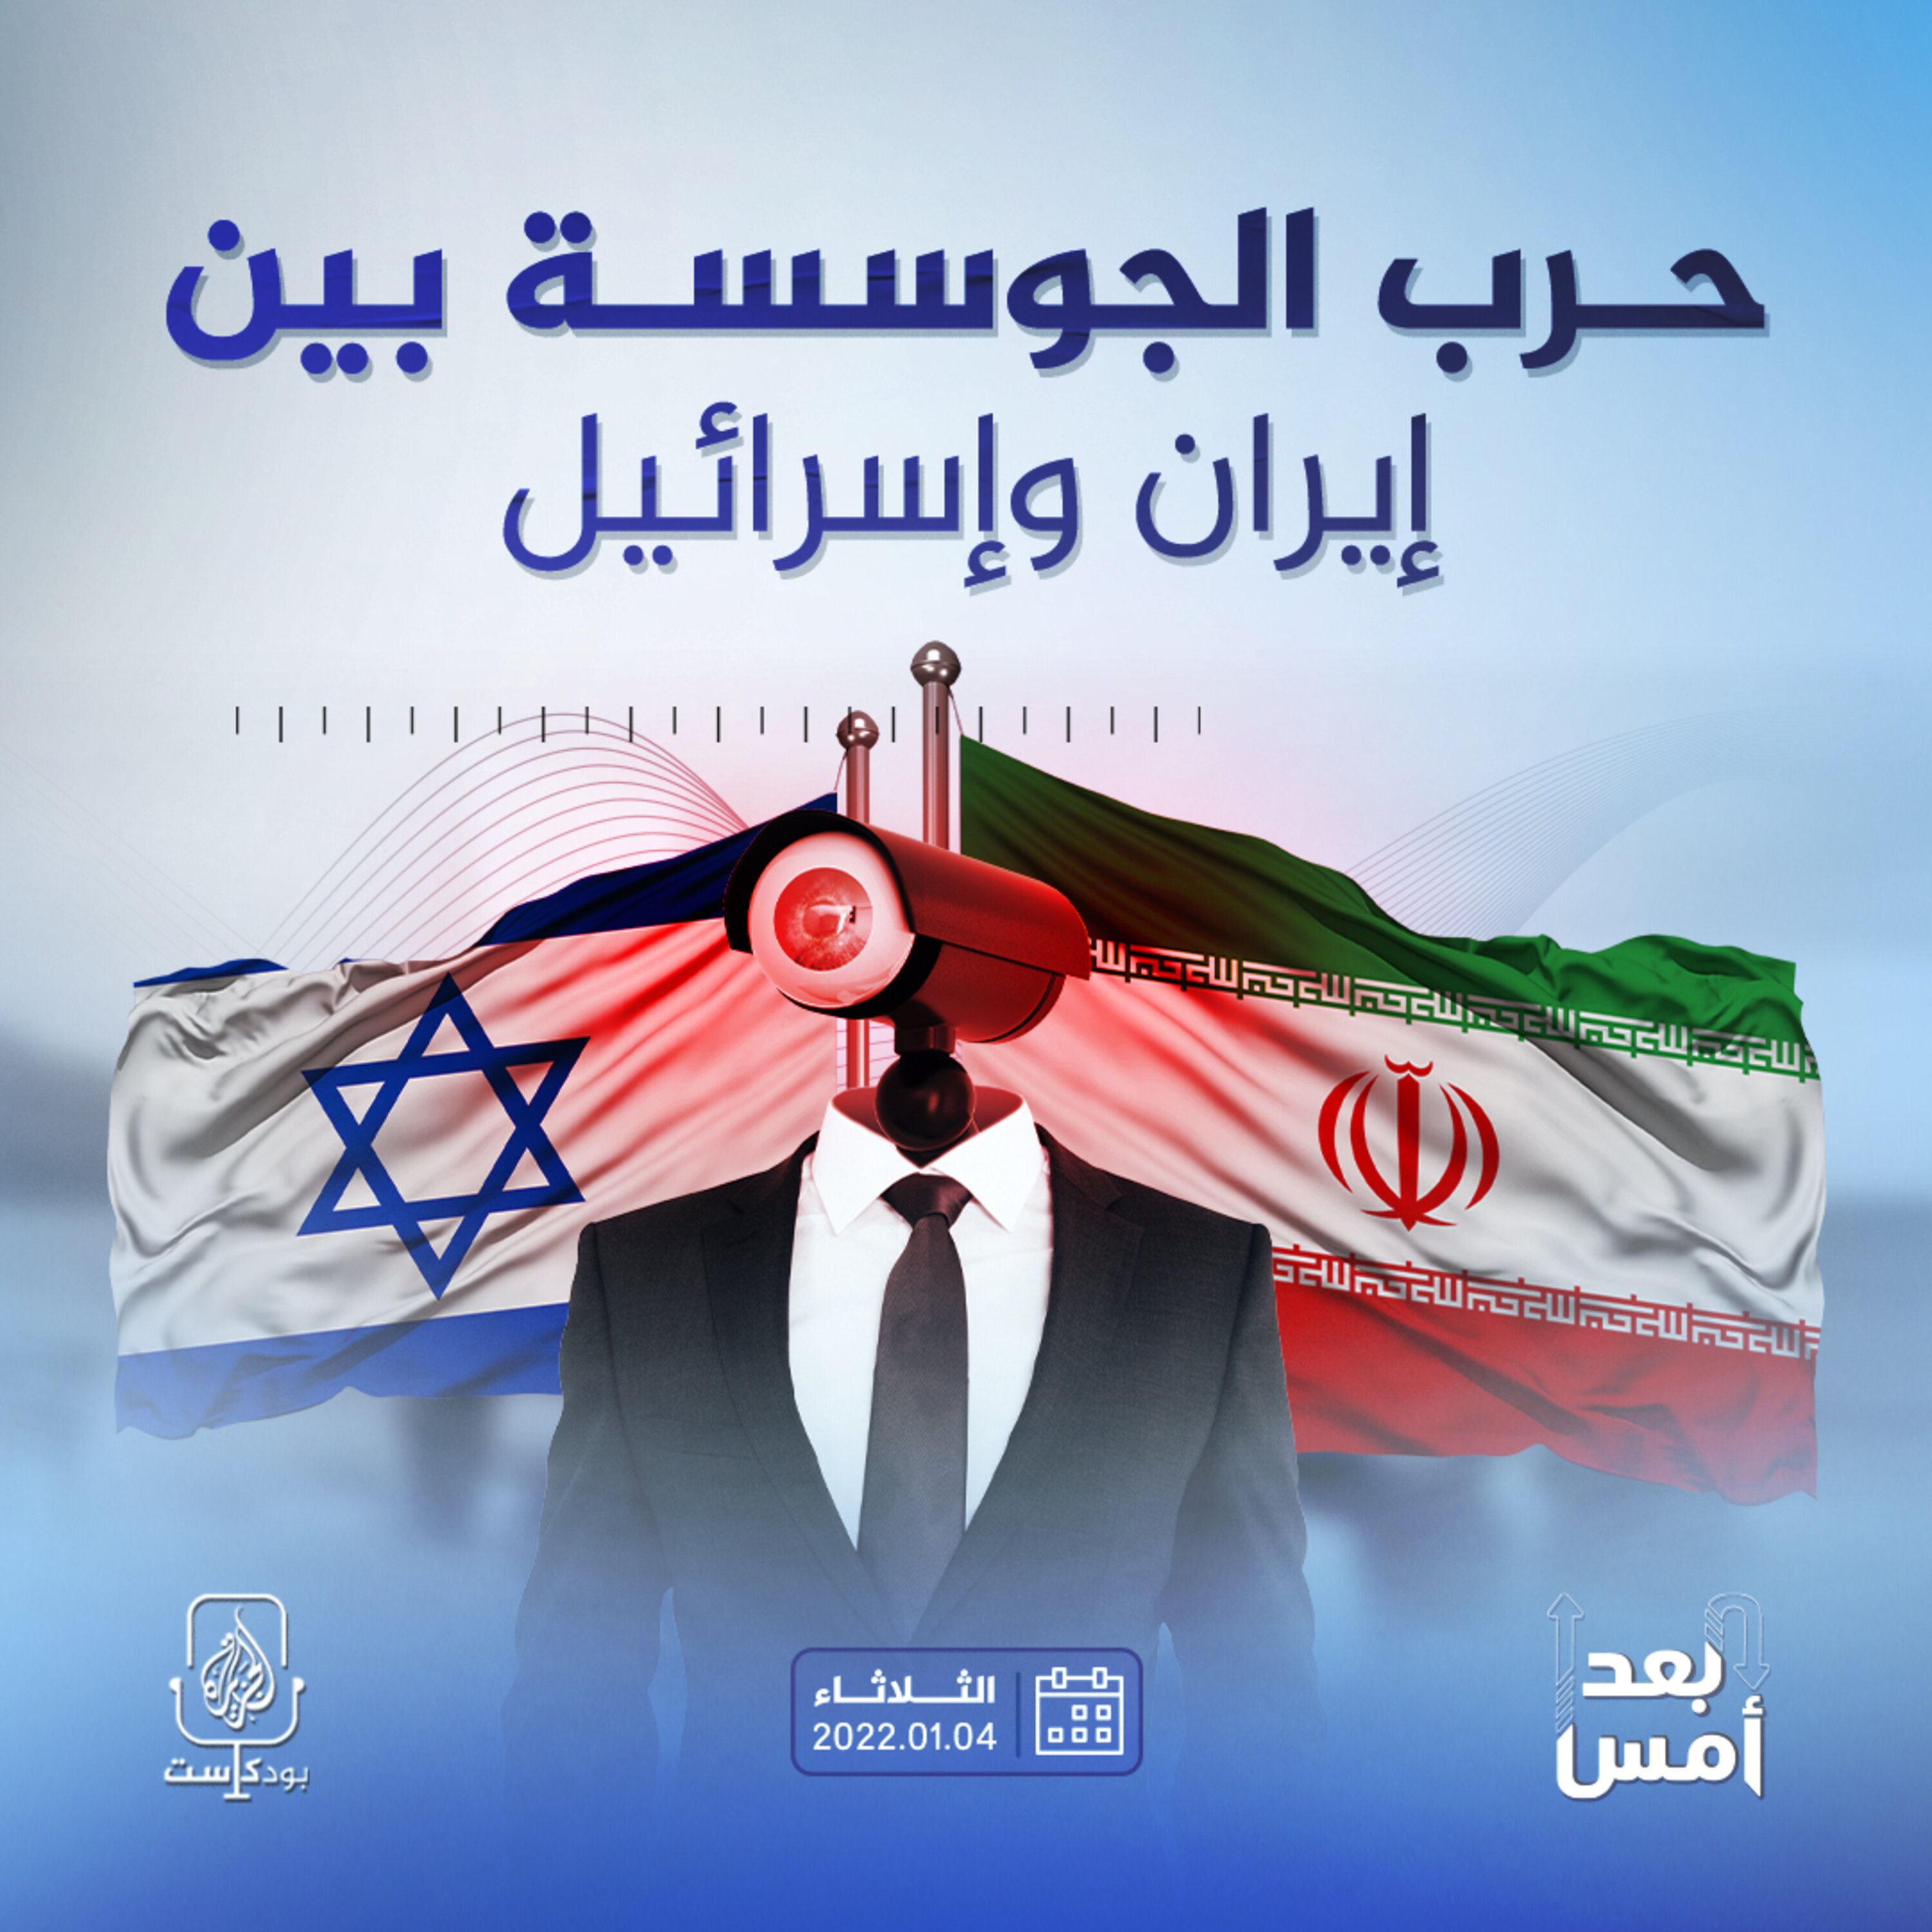 حرب الجوسسة بين إيران وإسرائيل